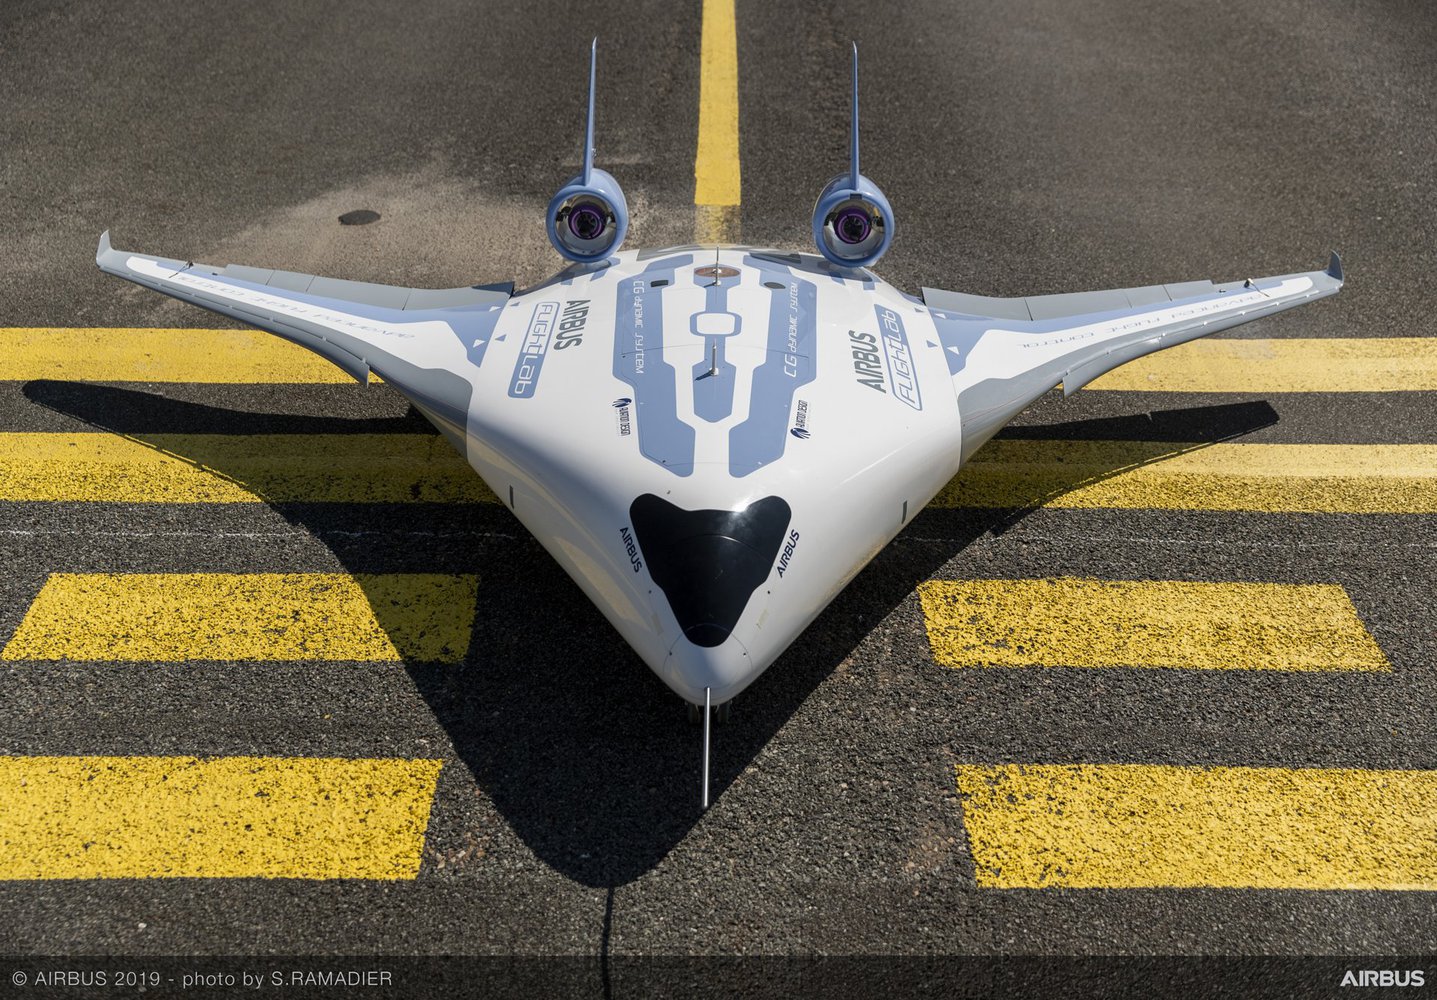 Airbus представила модель самолета со смешанным крылом (Видео)